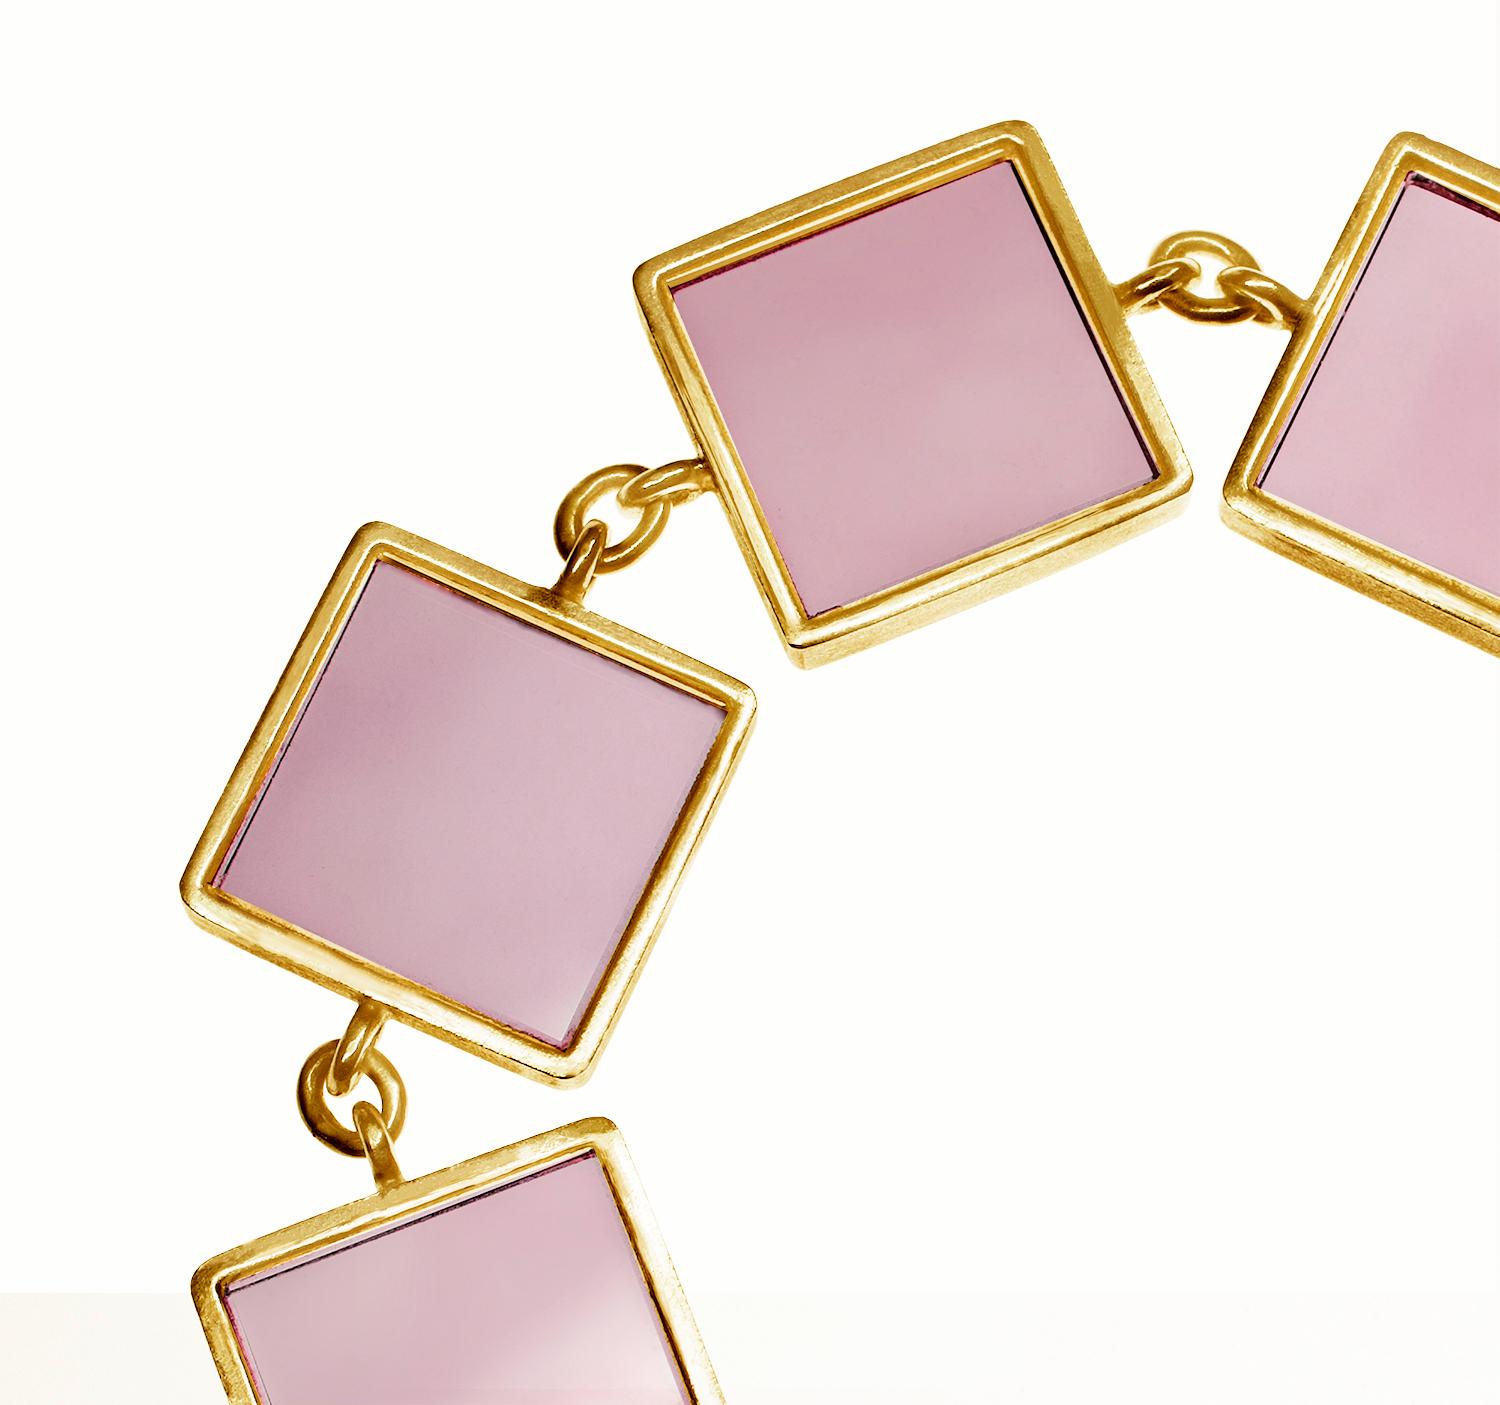 Ce bracelet de créateur est réalisé en or rose 14 carats et comporte sept pierres en onyx rose de 15x15x3 mm. Elle fait partie de la collection Ink, qui a été présentée dans les publications Harper's Bazaar UA et Vogue UA.

Le bracelet présente une